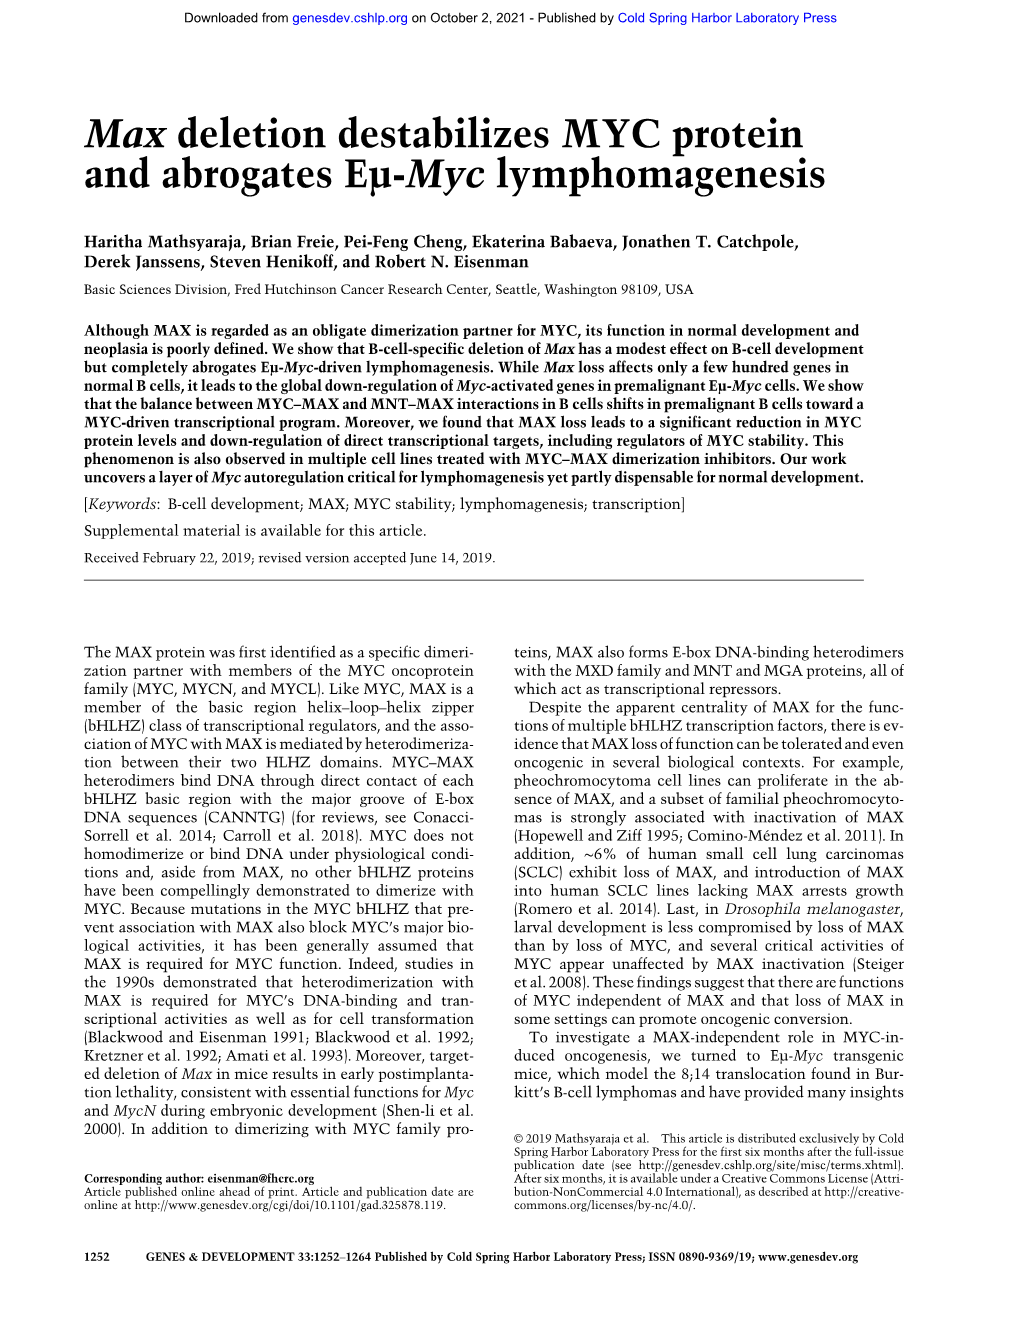 Max Deletion Destabilizes MYC Protein and Abrogates Eµ-Myc Lymphomagenesis